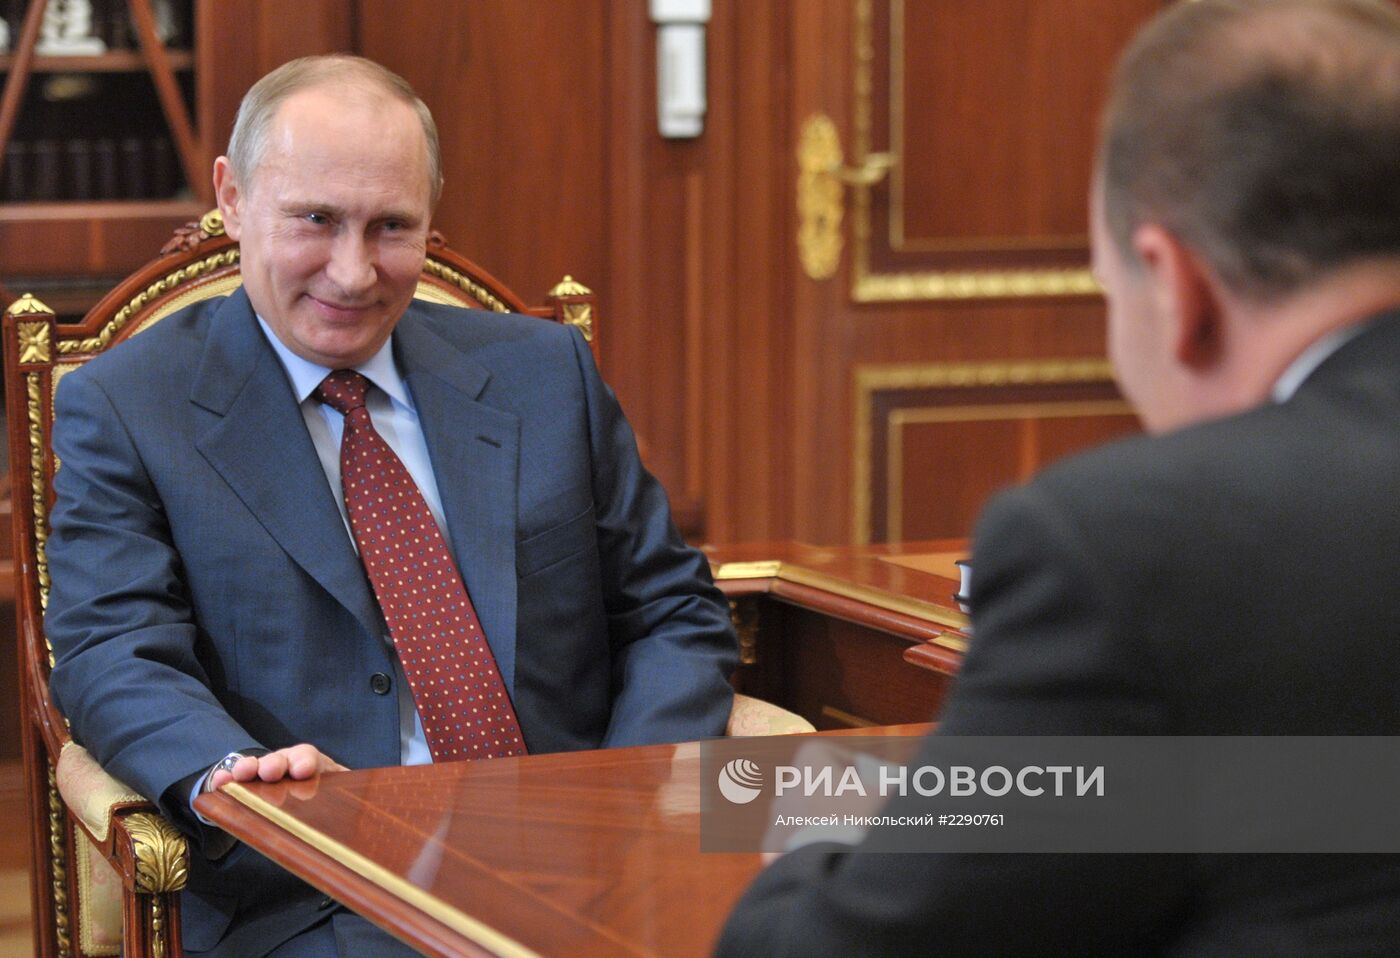 Встреча В.Путина с М.Менем в Кремле